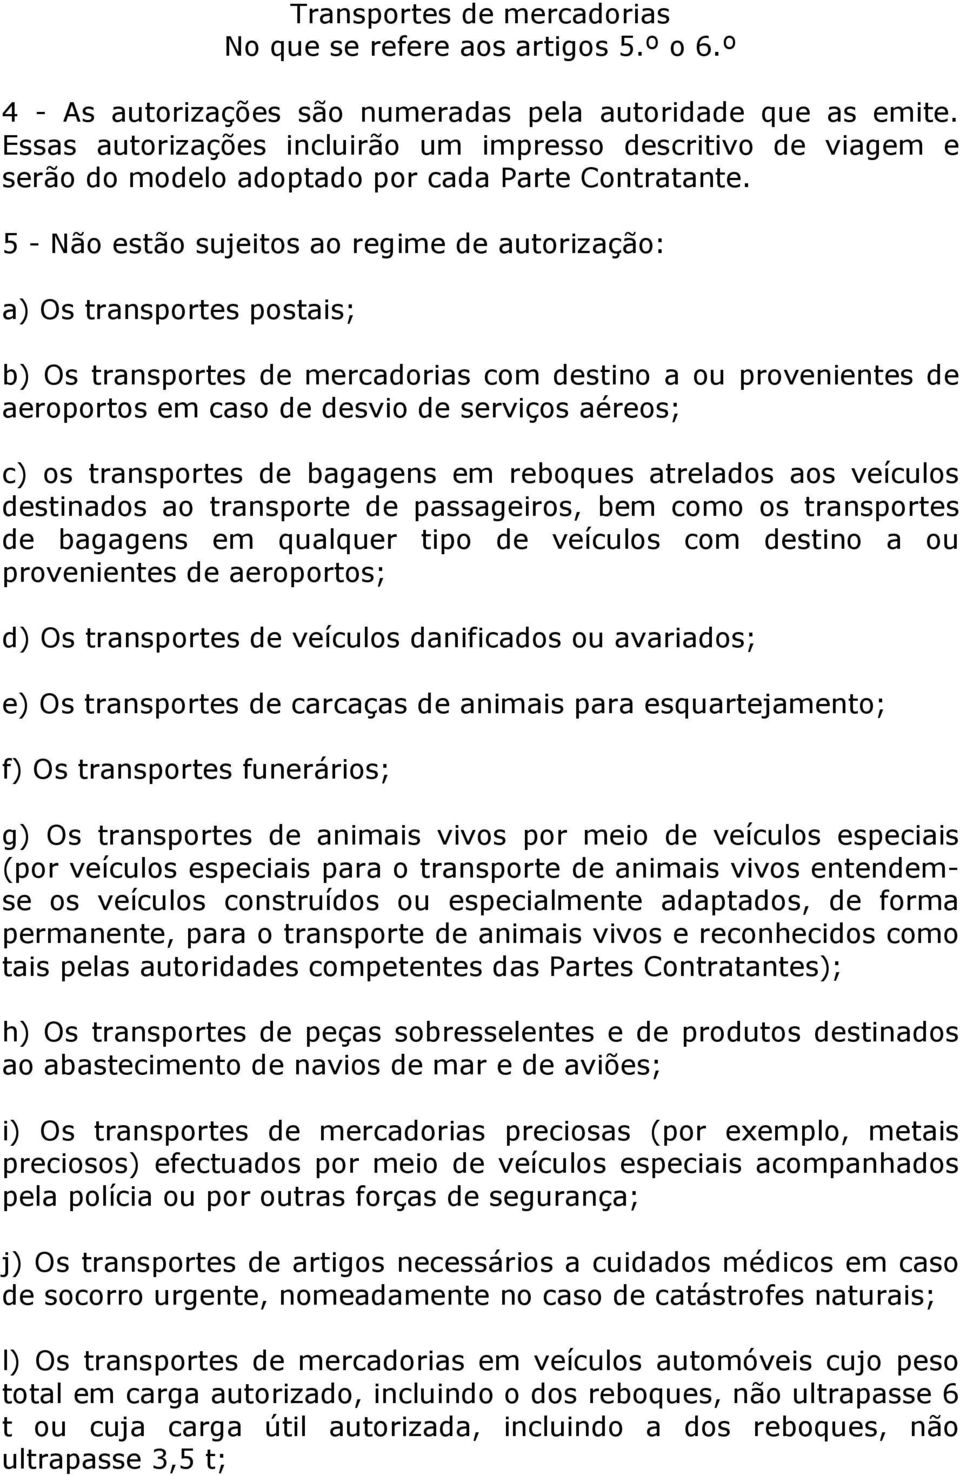 5 - Não estão sujeitos ao regime de autorização: a) Os transportes postais; b) Os transportes de mercadorias com destino a ou provenientes de aeroportos em caso de desvio de serviços aéreos; c) os